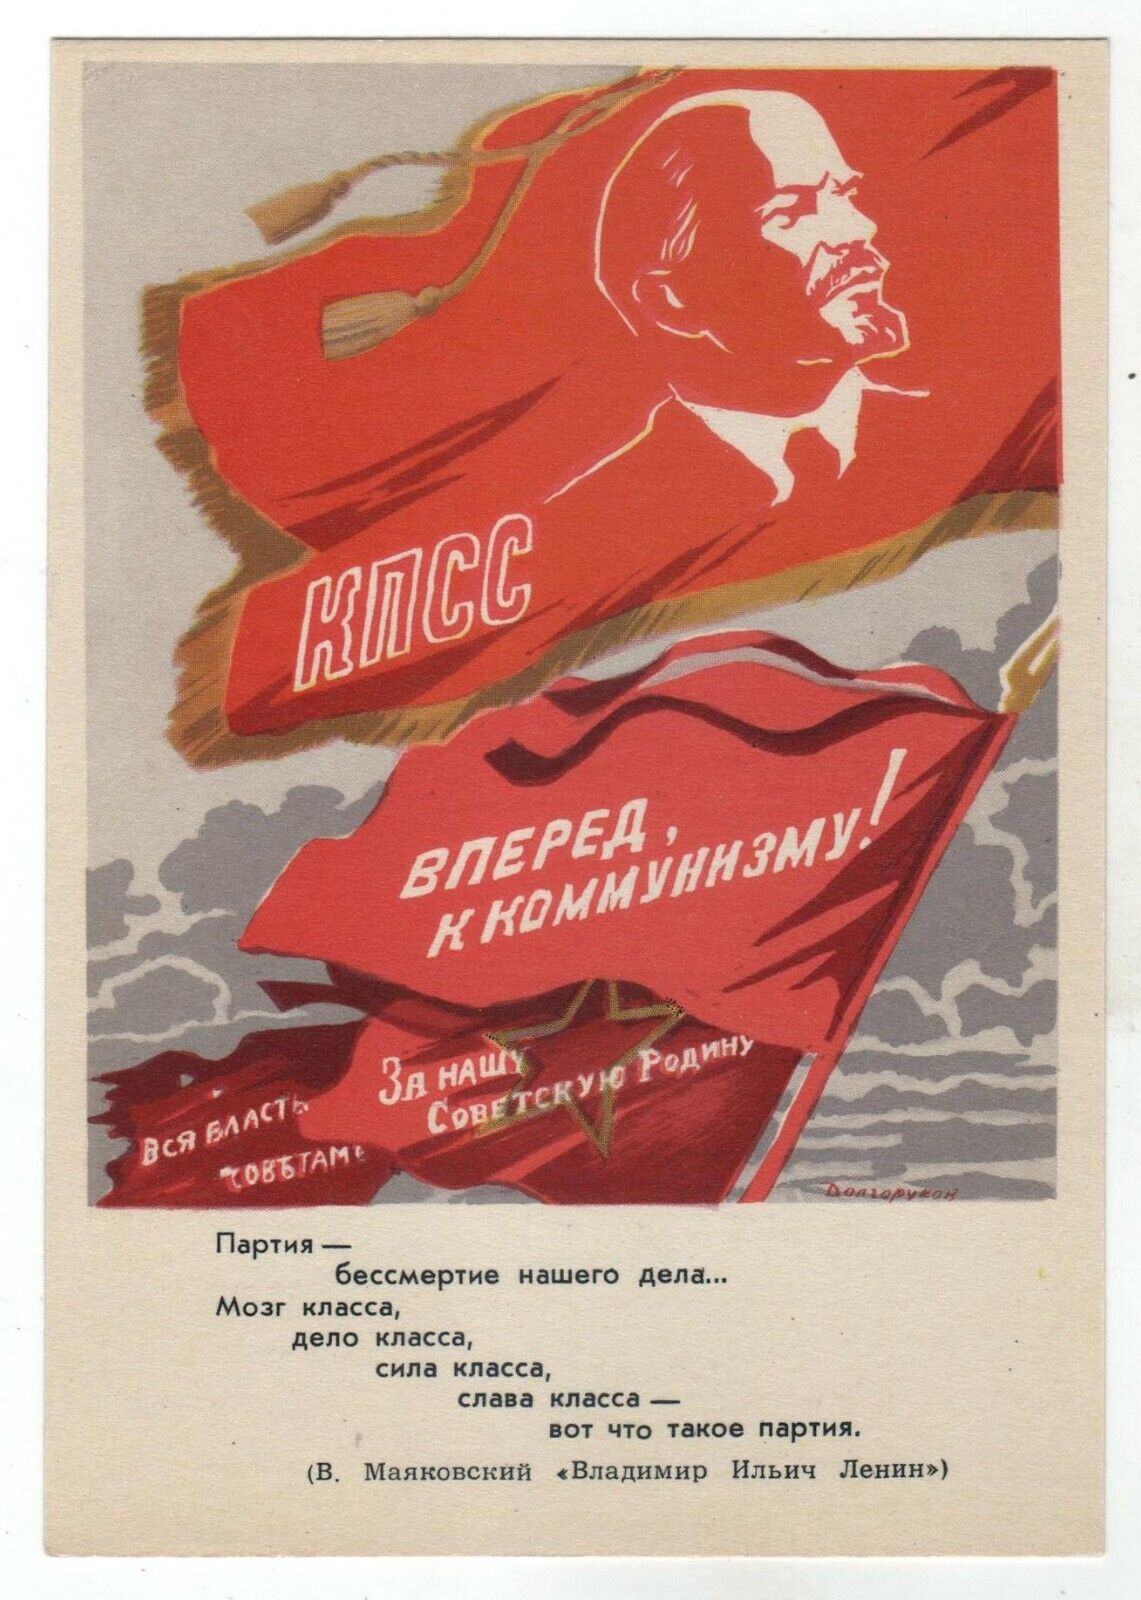 1961 LENIN Leader October Revolution Flag Propaganda ART OLD Russian Postcard